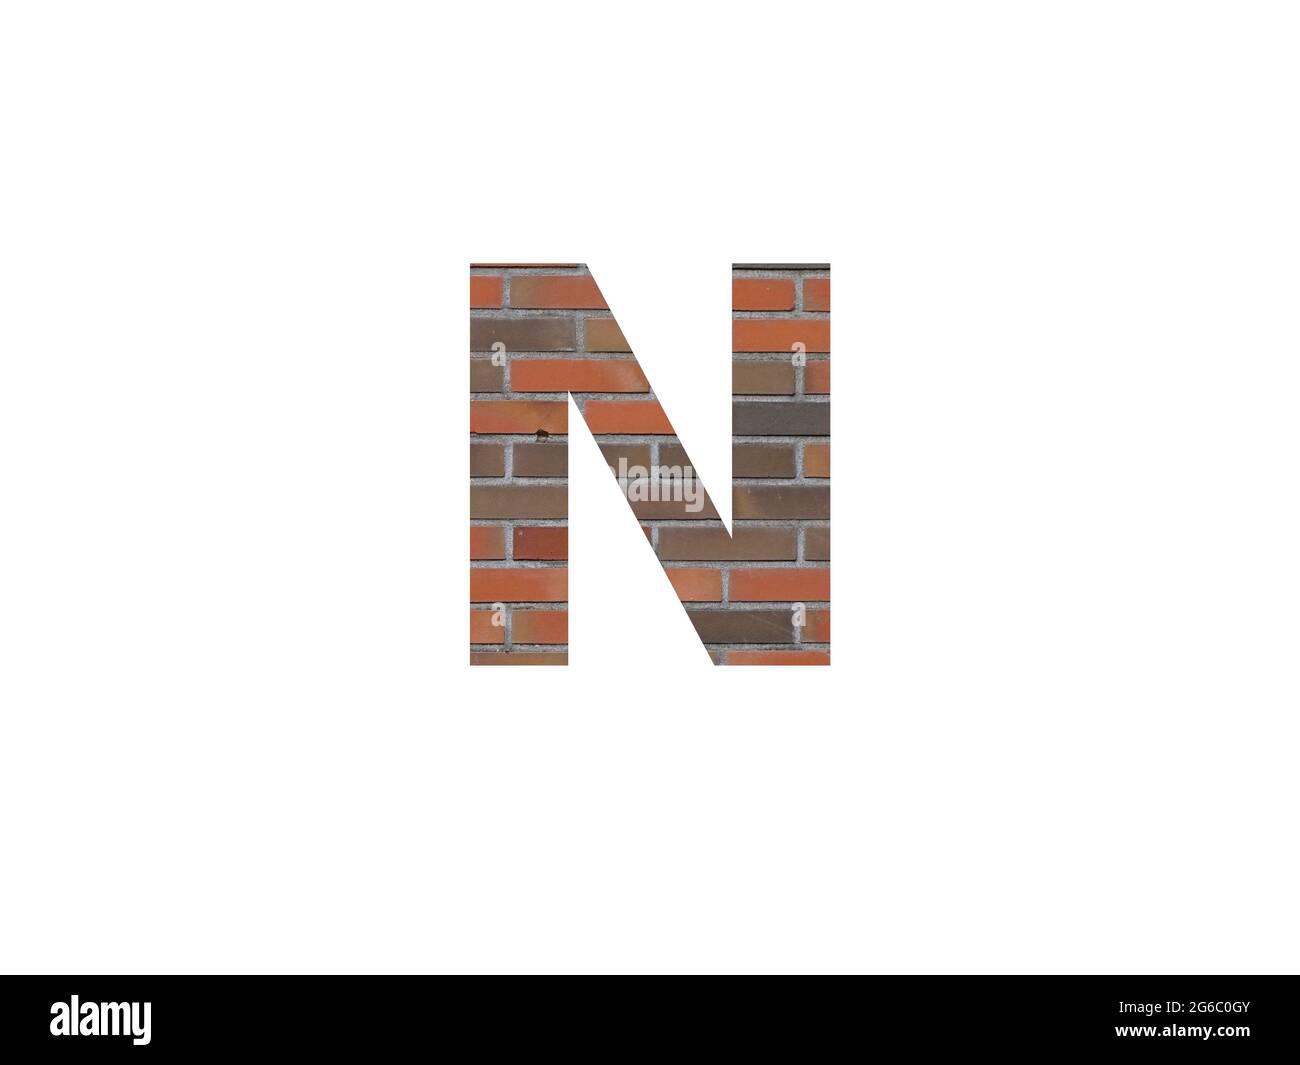 Letra N del alfabeto hecha con pared de ladrillos, en marrón, naranja, rojo gris y aislada sobre fondo blanco Foto de stock